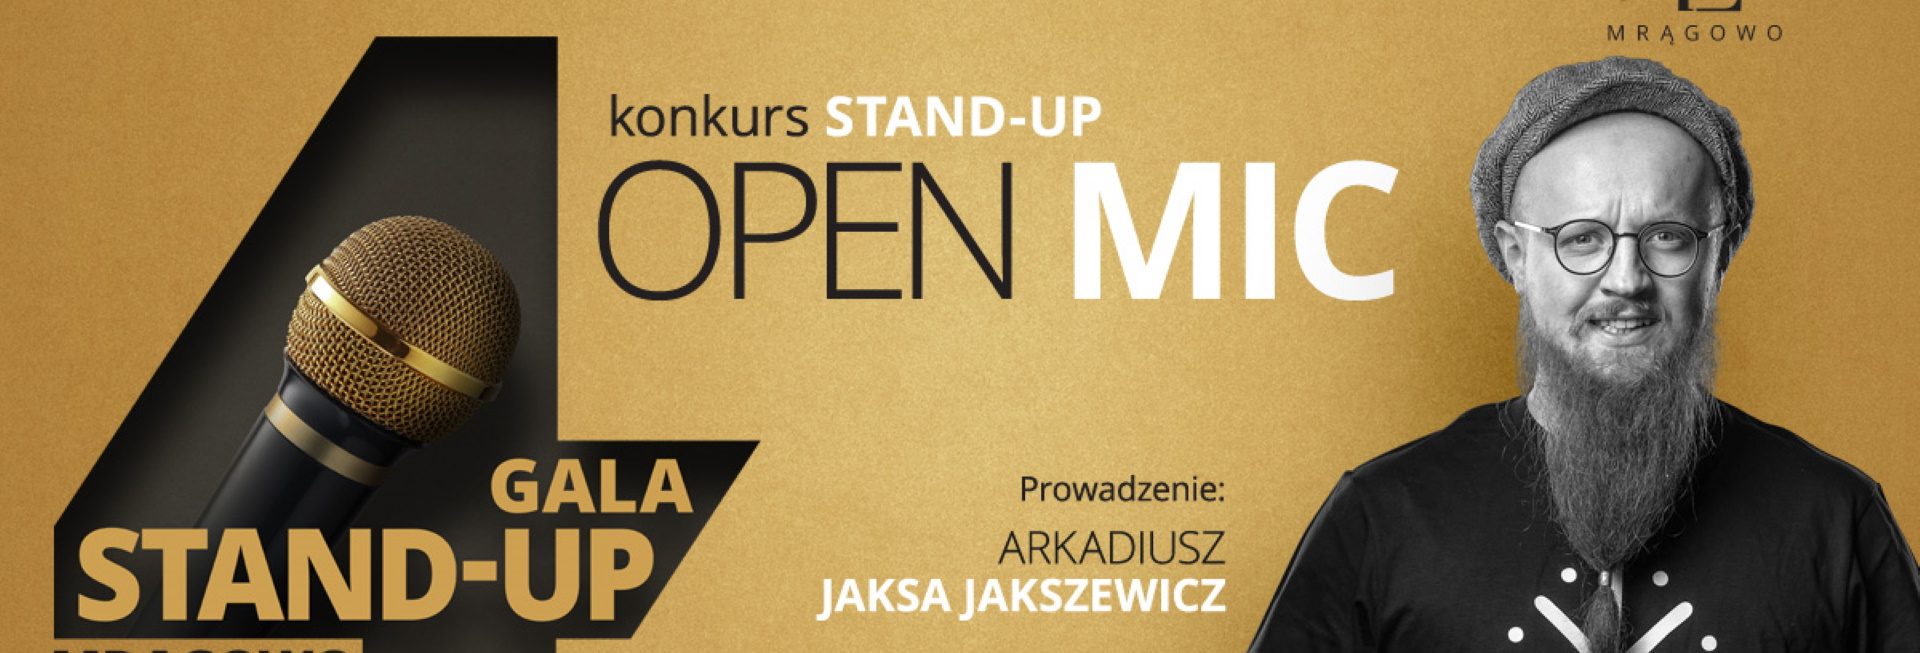 Plakat zapraszający w sobotę 15 lipca 2023 r. do Kuźni Społecznej w Olsztynie na Stand-Up Konkurs OPEN MIC Olsztyn 2023. 